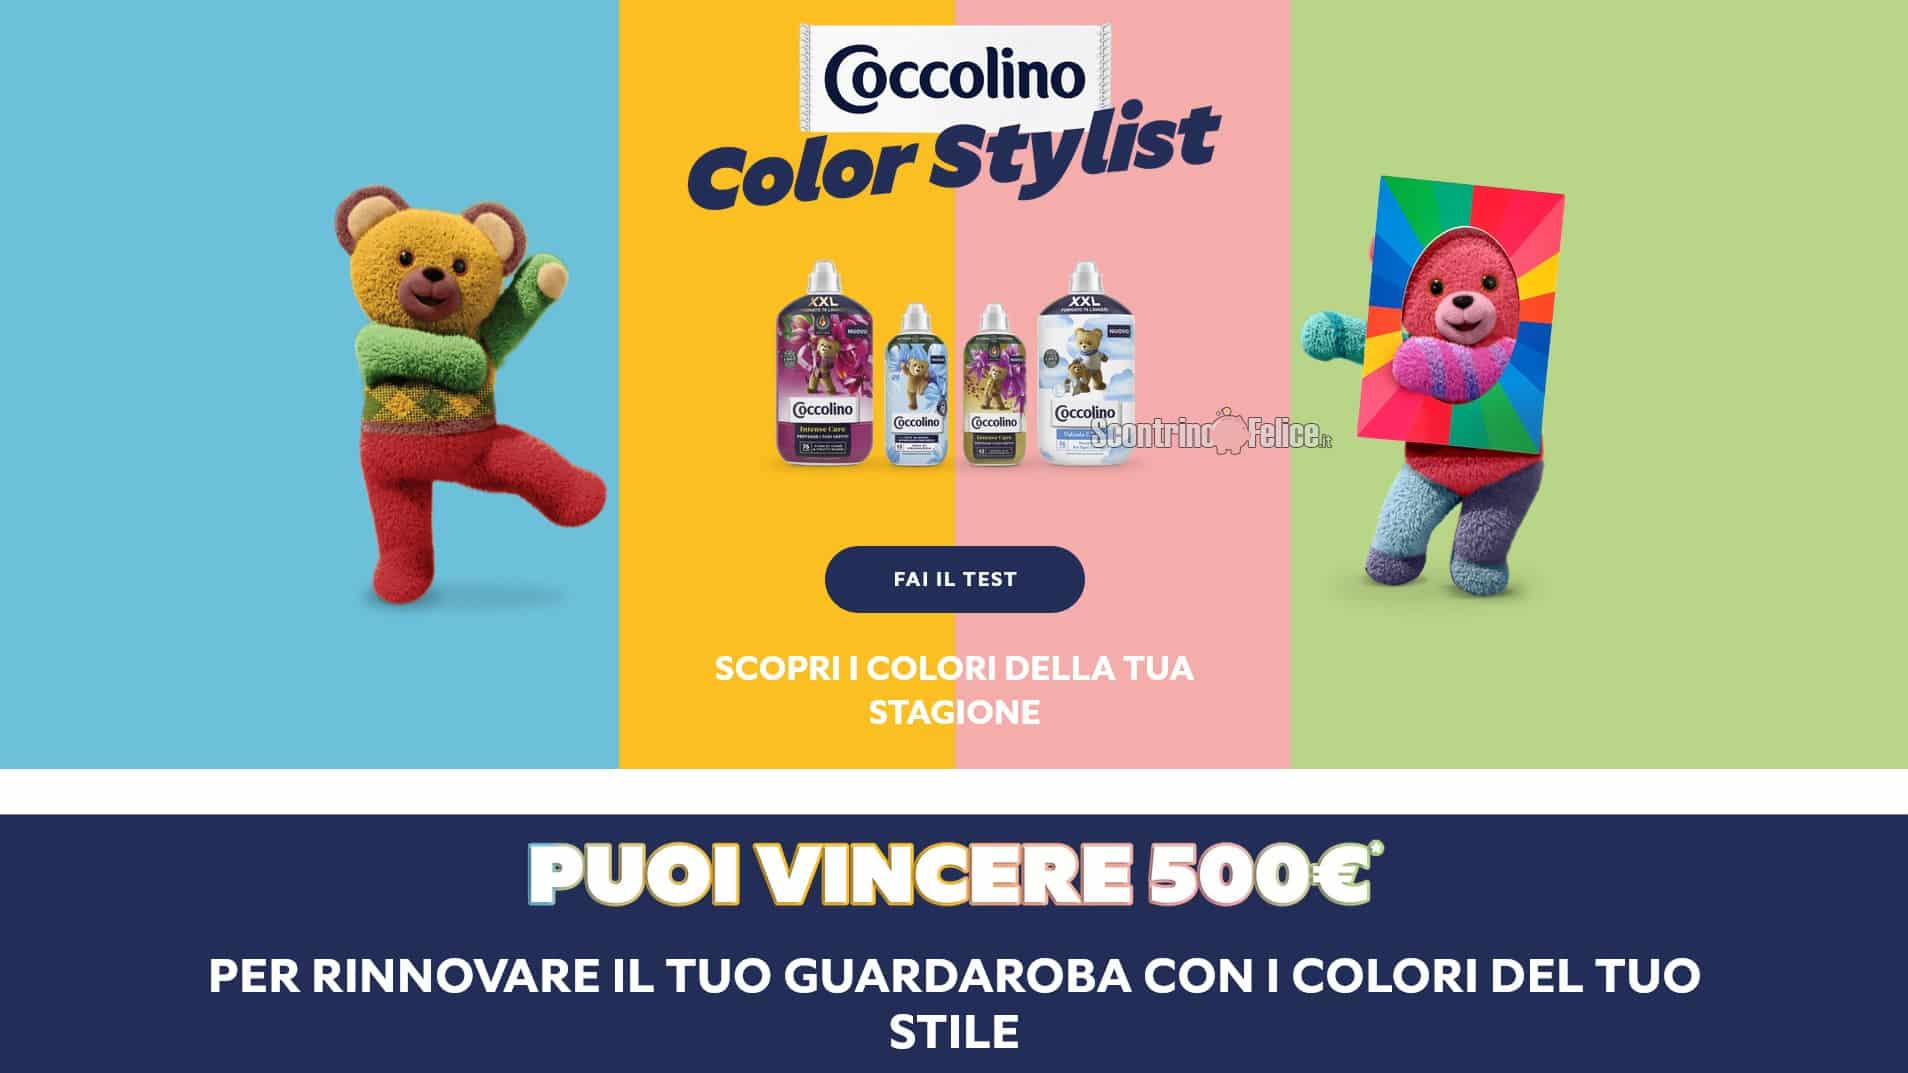 Concorso Coccolino "Color Stylist": vinci 500 euro per rinnovare il tuo guardaroba